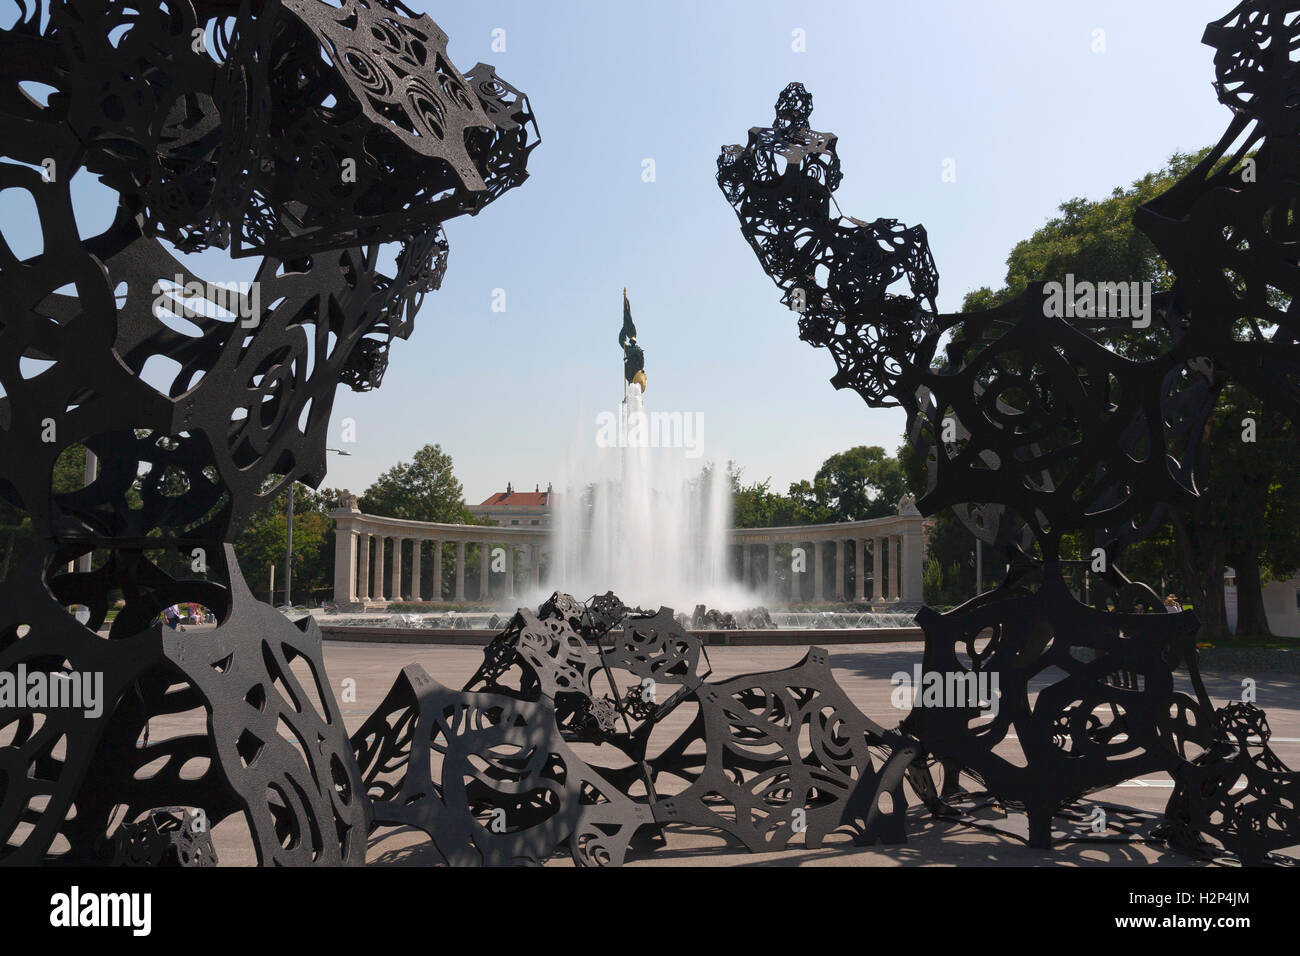 Hochstrahlbrunnen fontaine et Monument commémoratif de guerre soviétique, Vienne, avec installation d'art moderne Banque D'Images